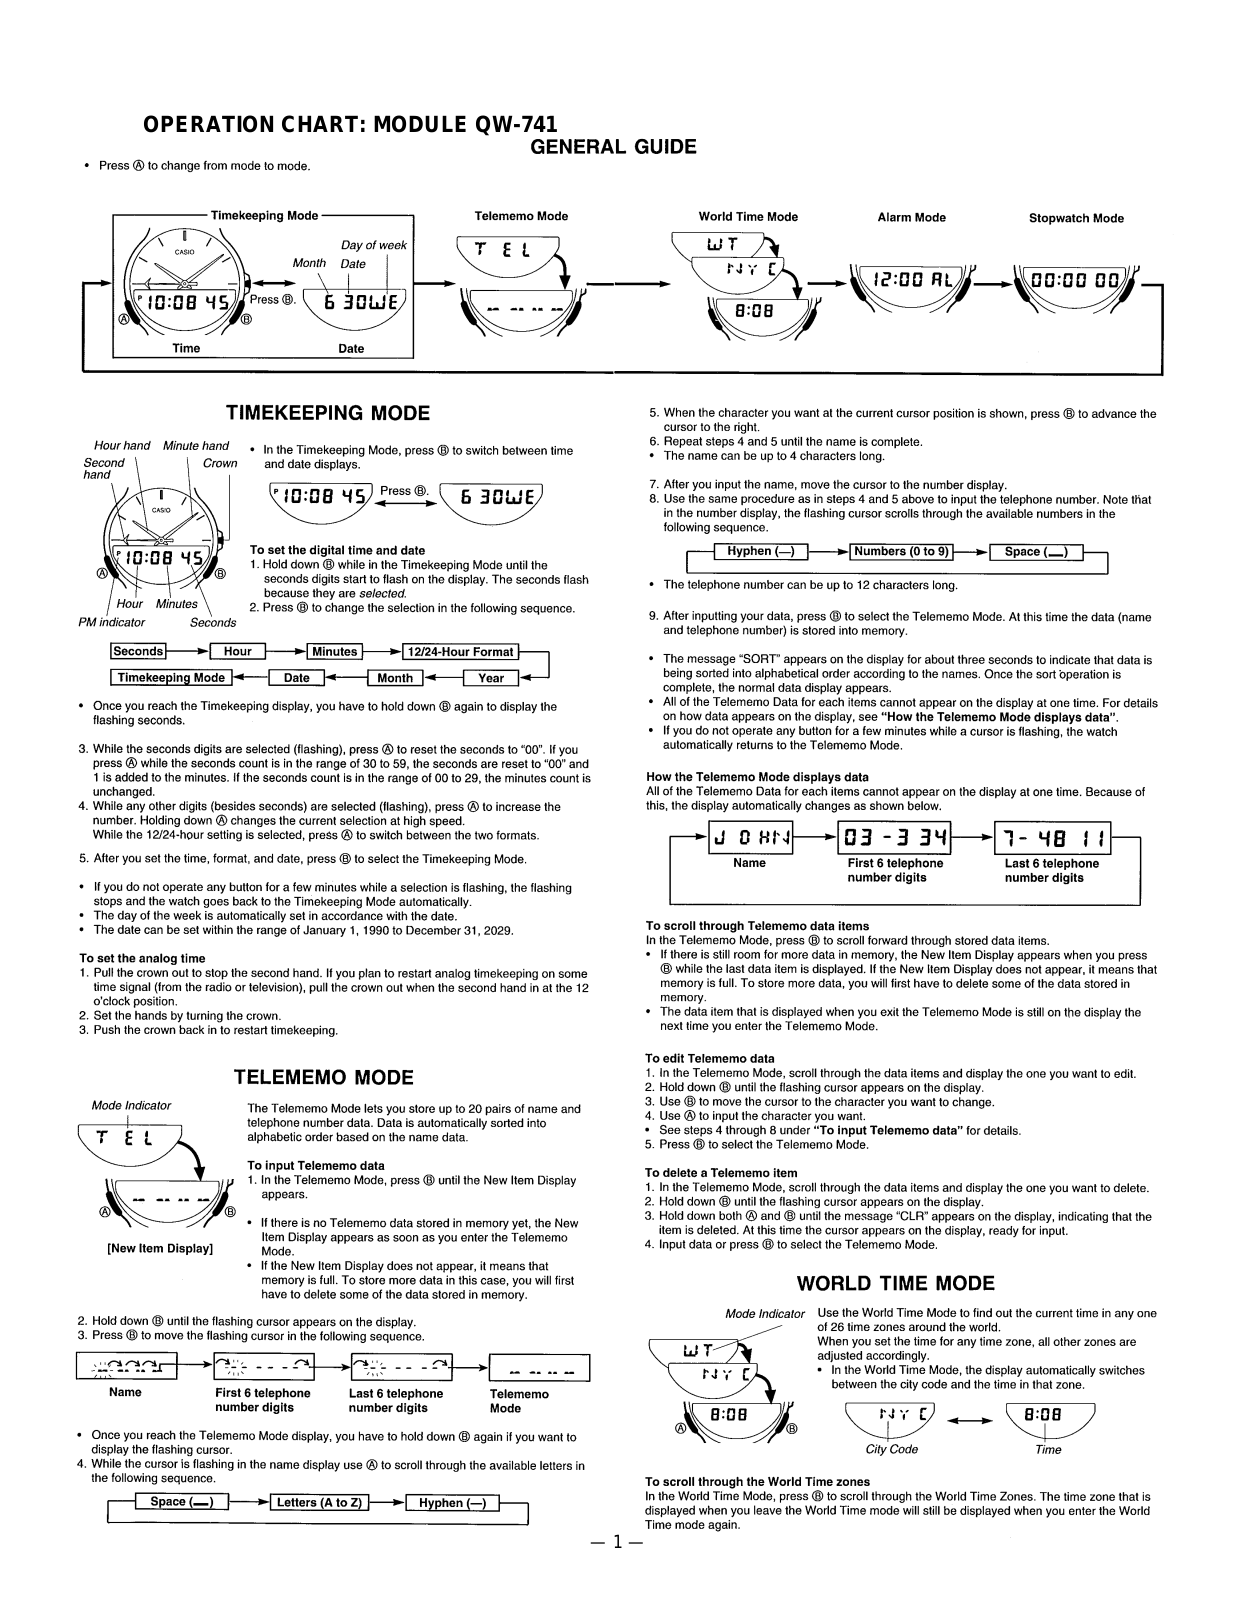 Casio 741 Owner's Manual